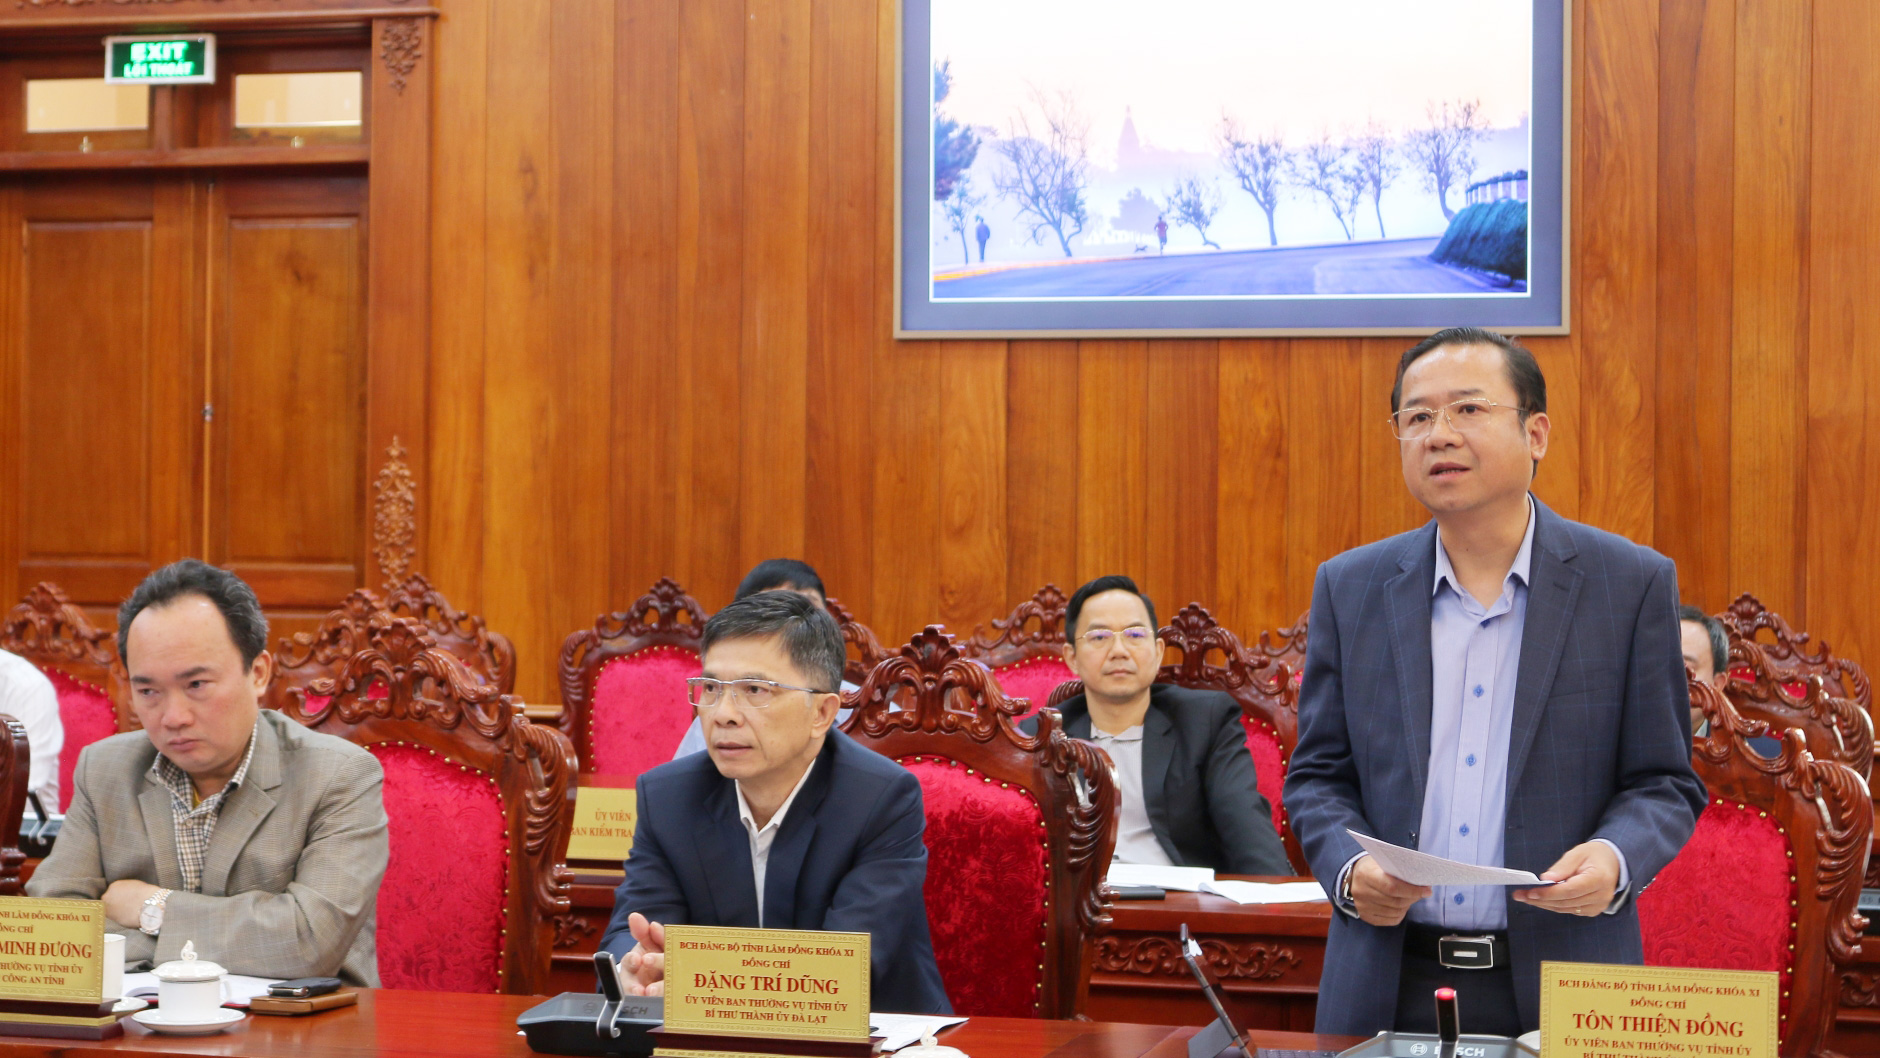 Bí thư Thành ủy Bảo Lộc Tôn Thiện Đồng trao đổi về công tác quán triệt các nghị quyết, hướng dẫn quy chế bầu cử trong Đảng